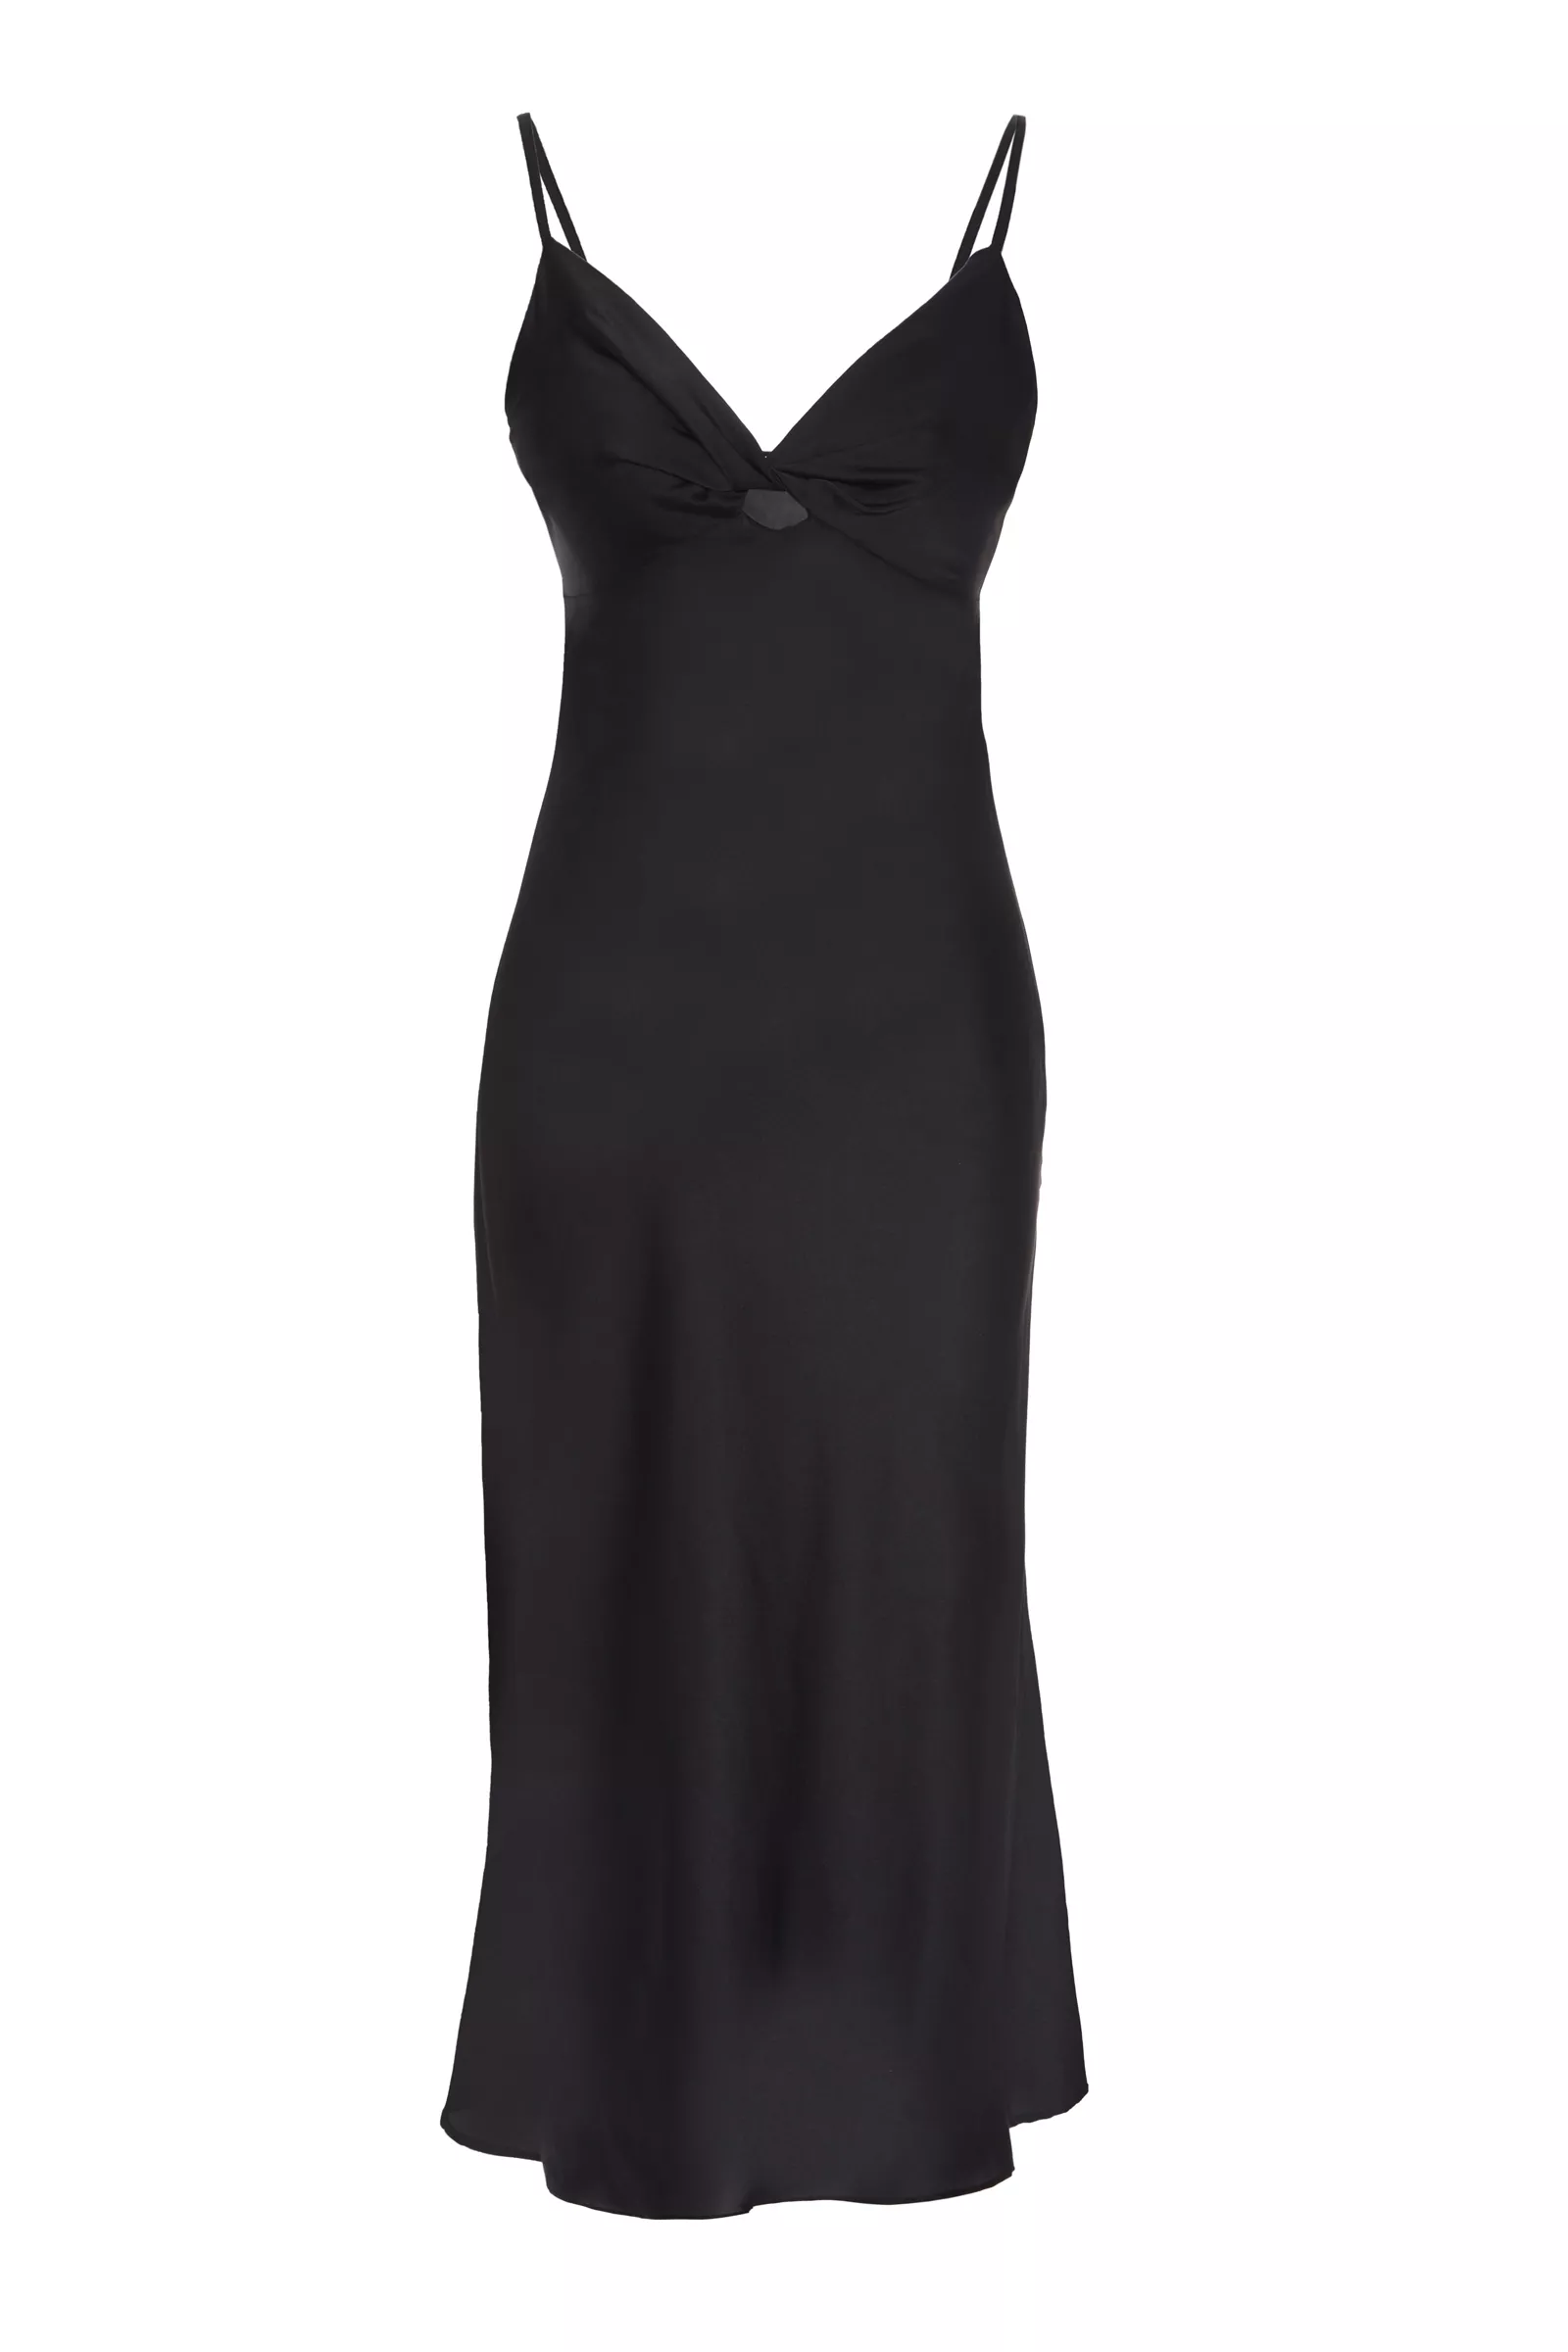 Black Satin Sleeveless Maxi Dress